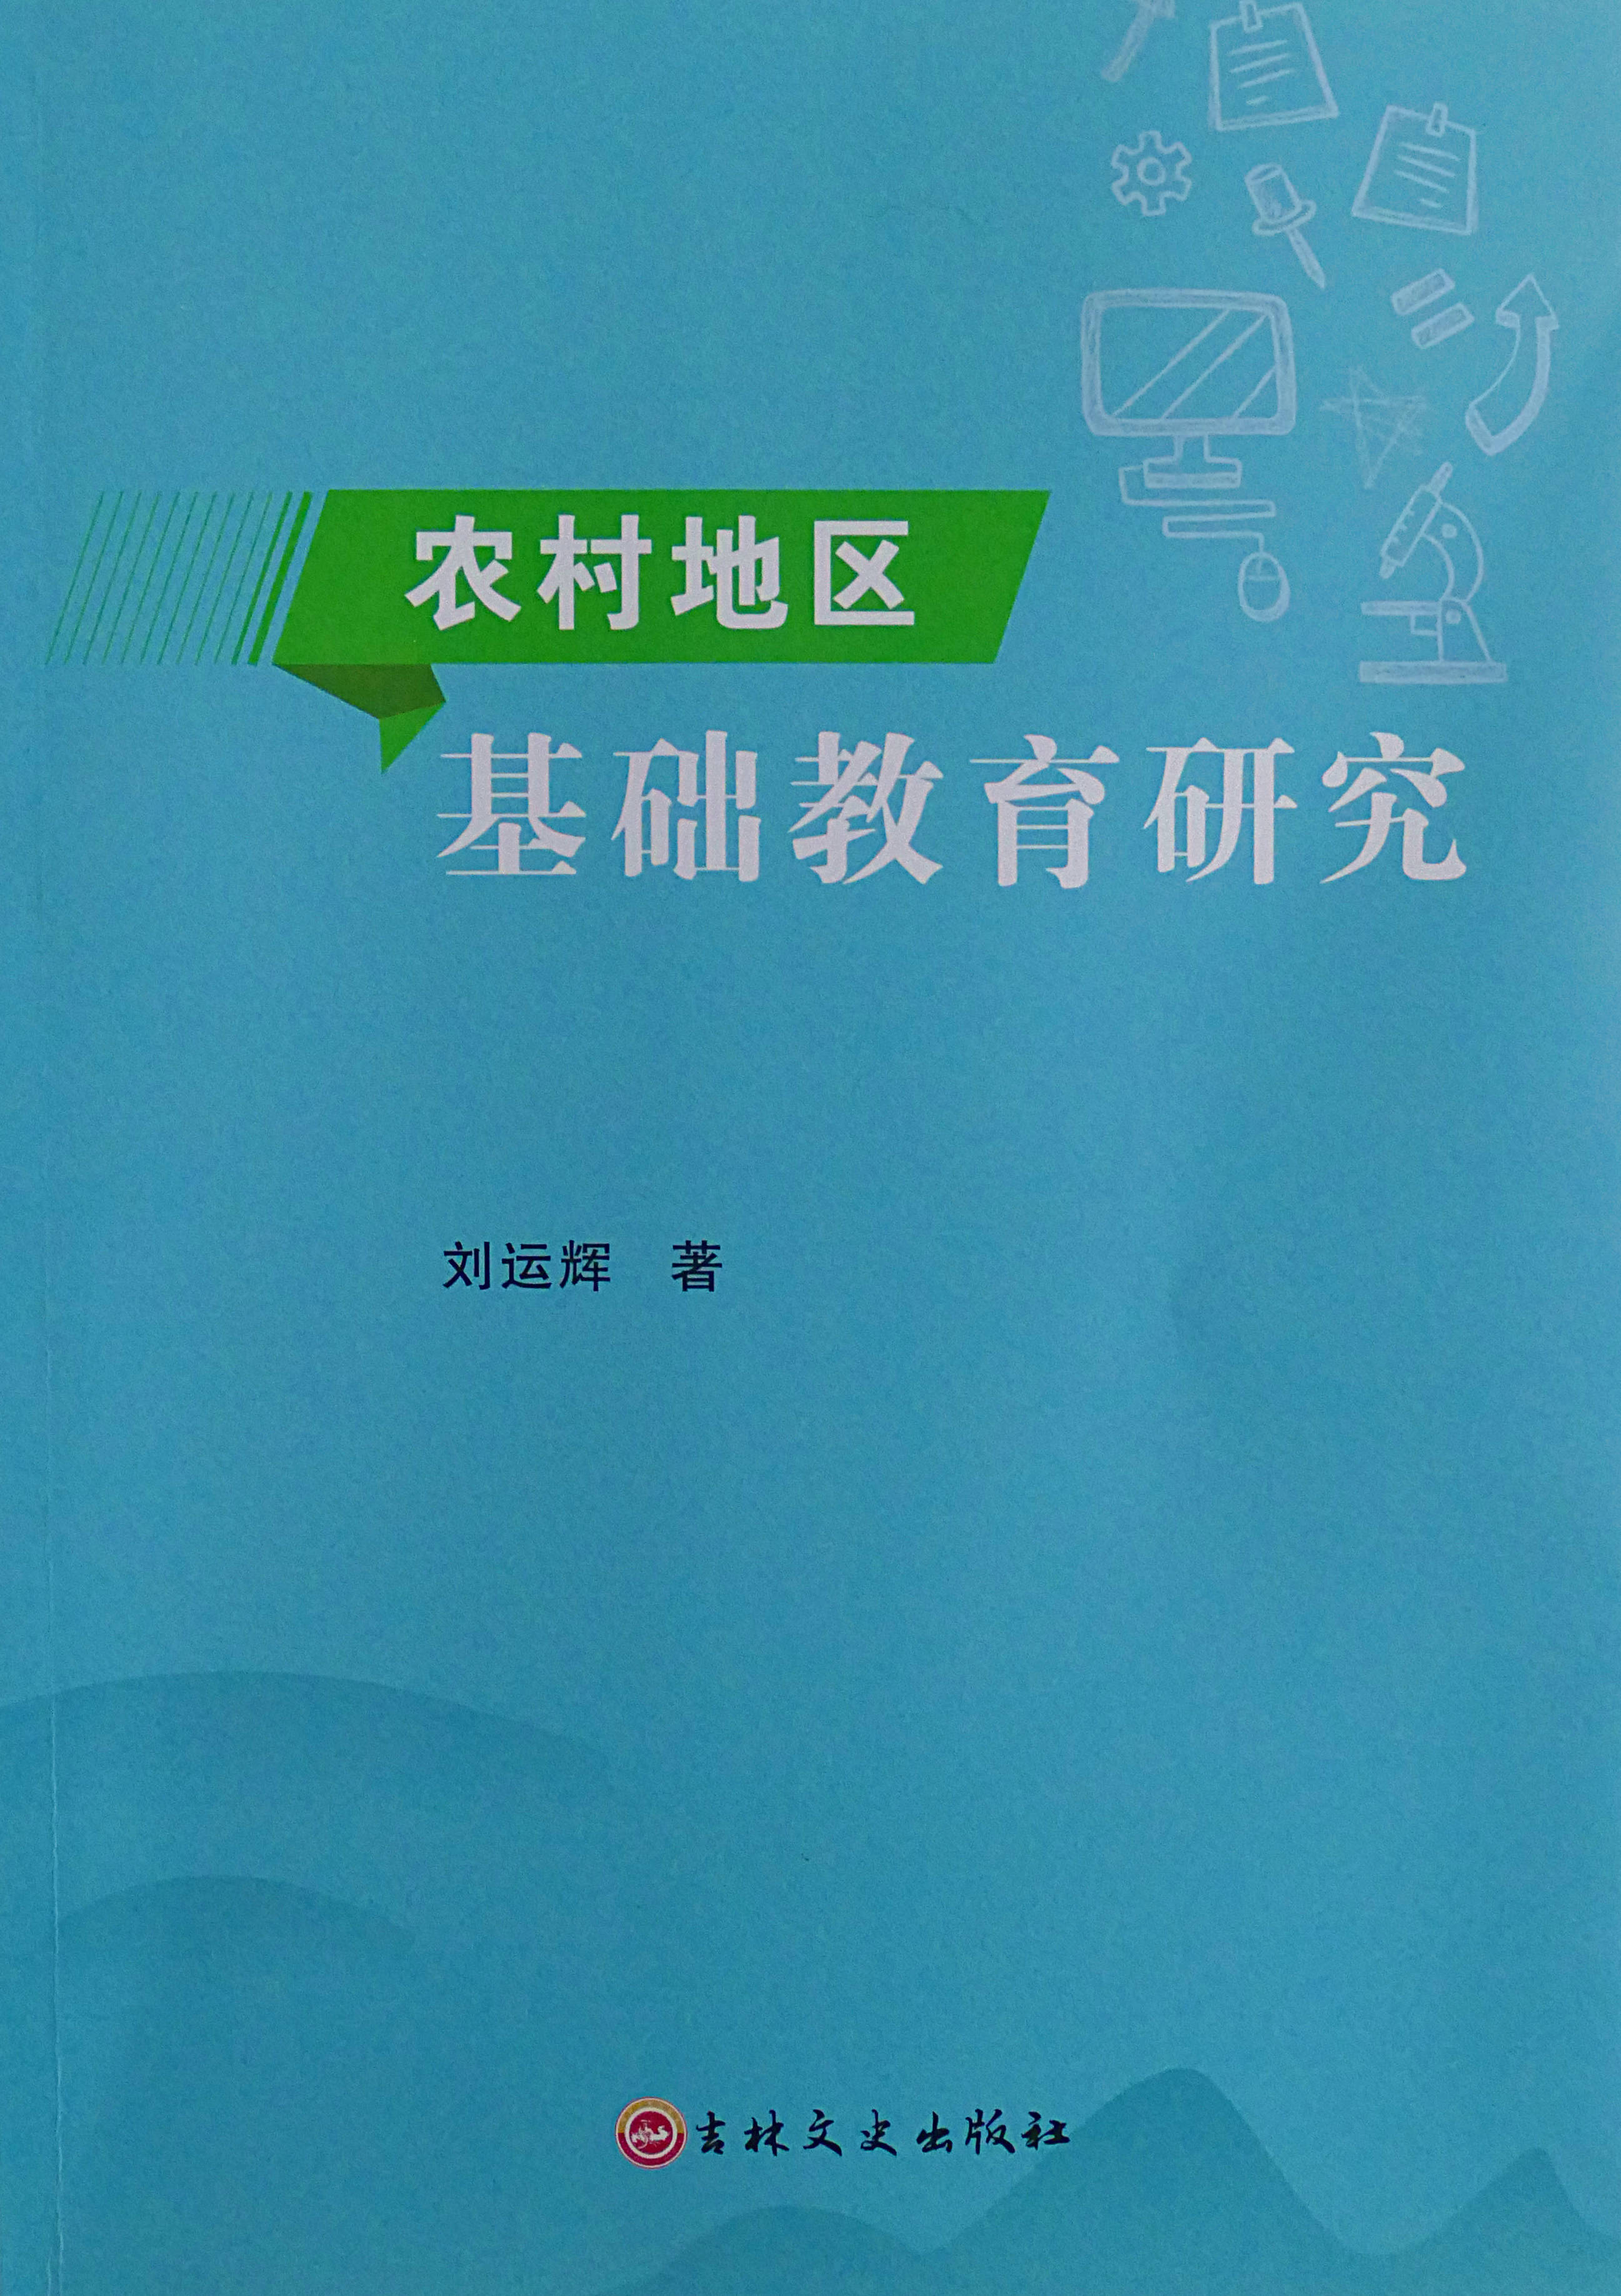 贵州麻江：刘运辉老师专著《农村地区基础教育研究》一书正式出版